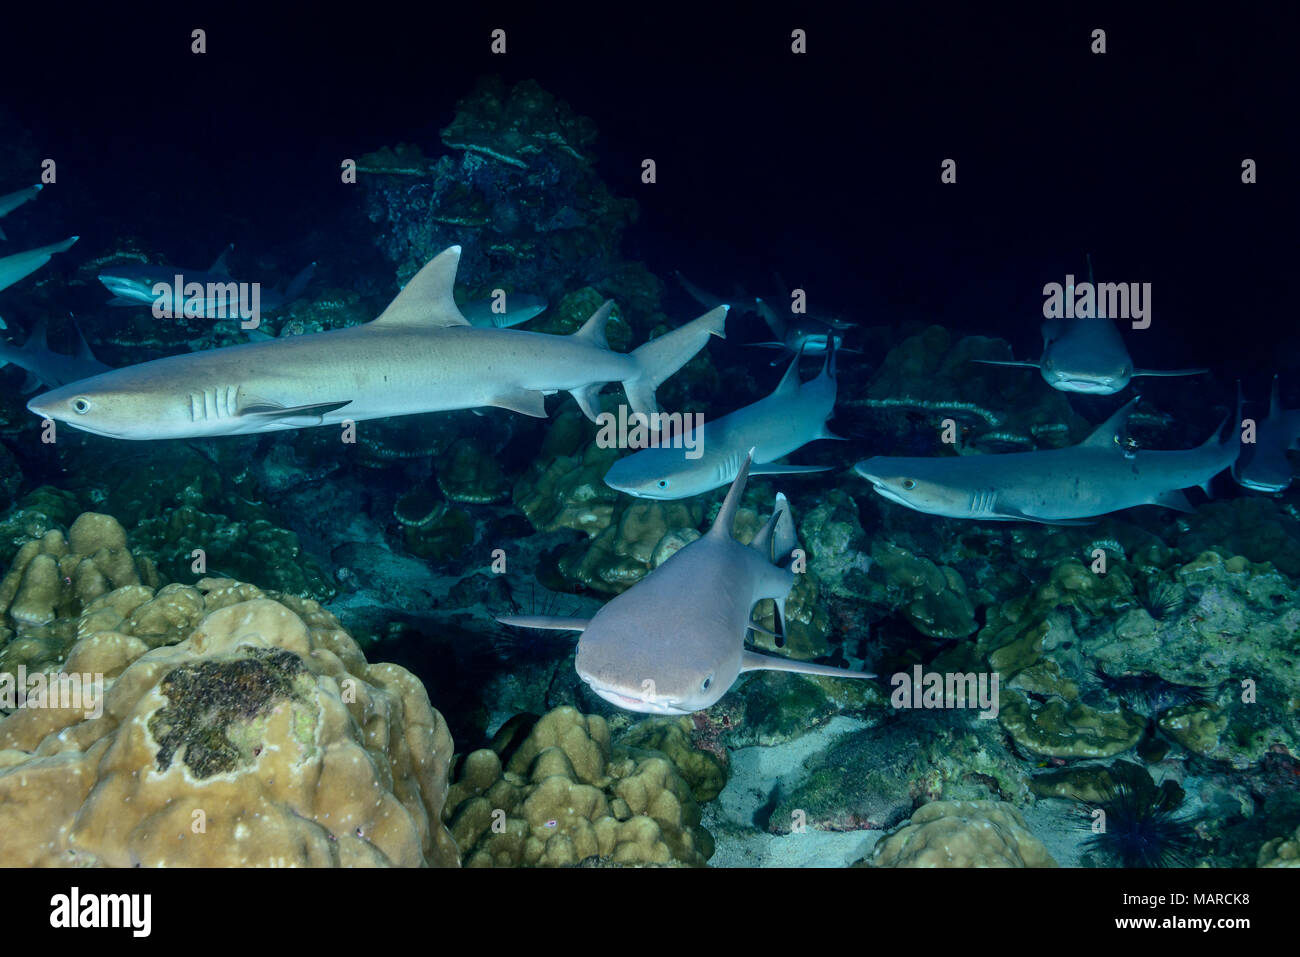 Whitetip Reef Shark (Triaenodon obesus). Sommeil groupe au fond de la mer dans la nuit. L'île Cocos, le Costa Rica, l'Océan Pacifique Banque D'Images